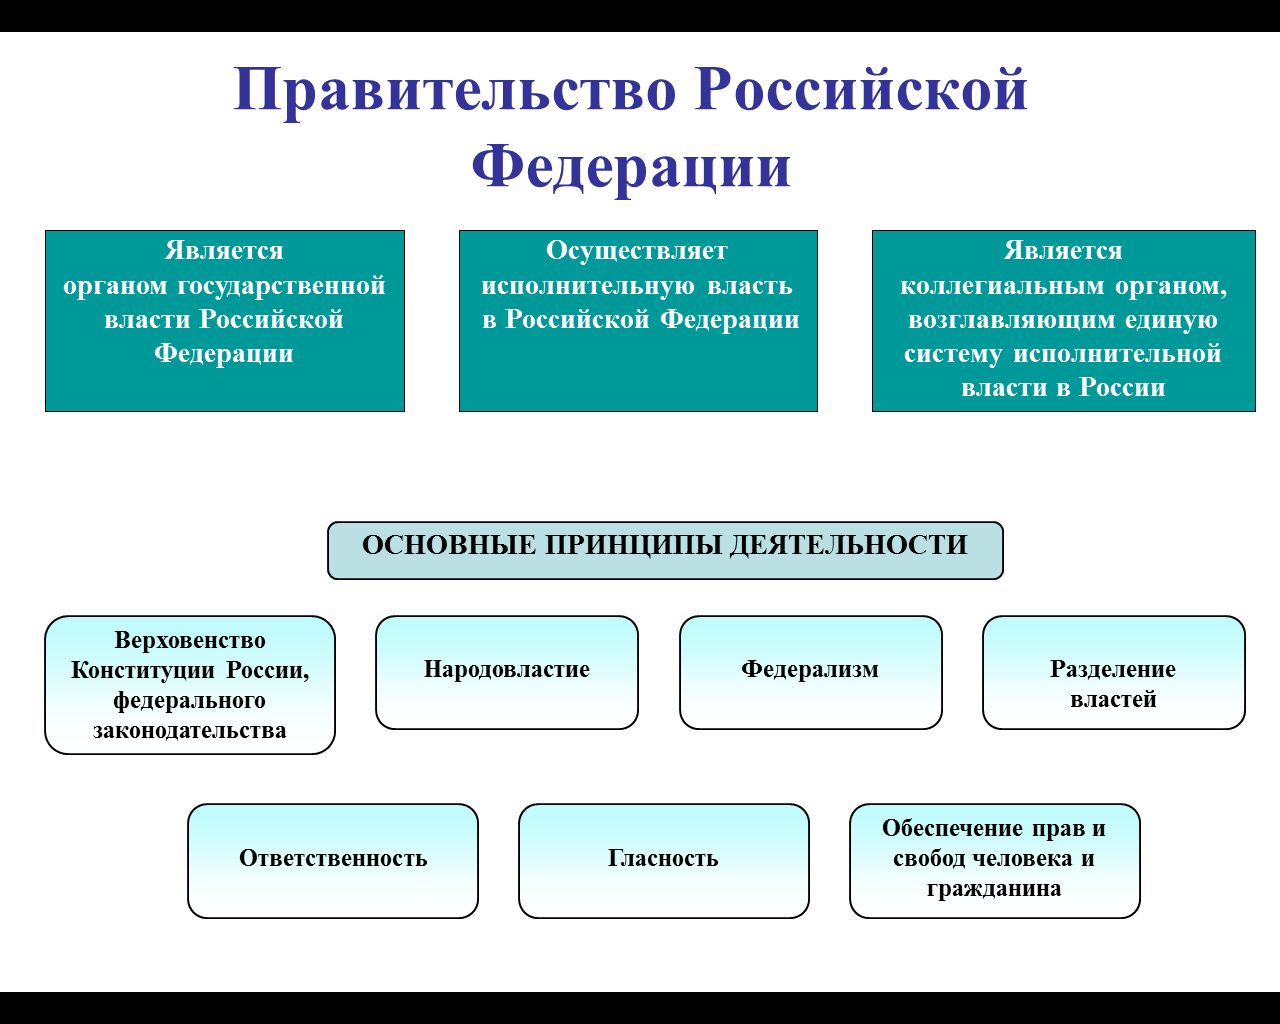 Система правительства РФ